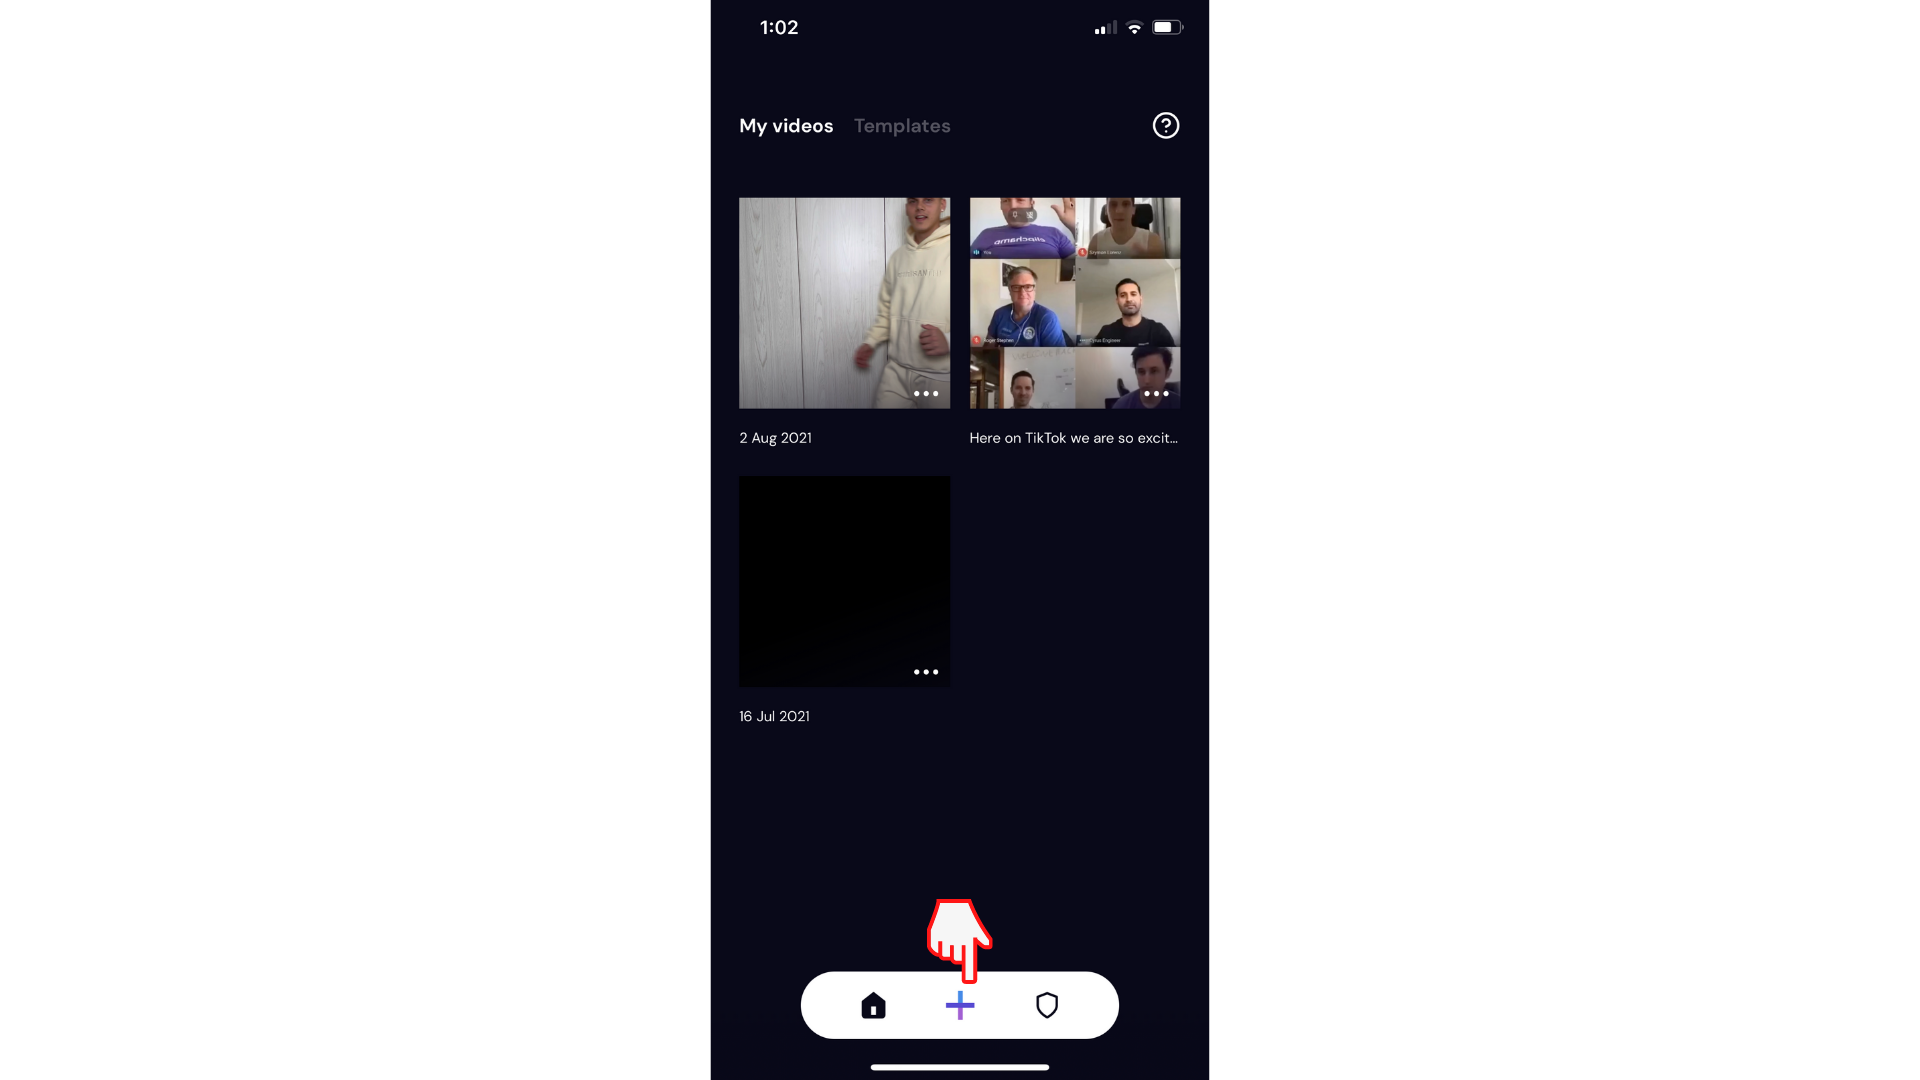 Användare som skapar en ny video i Clipchamp iOS-appen genom att klicka på plusknappen